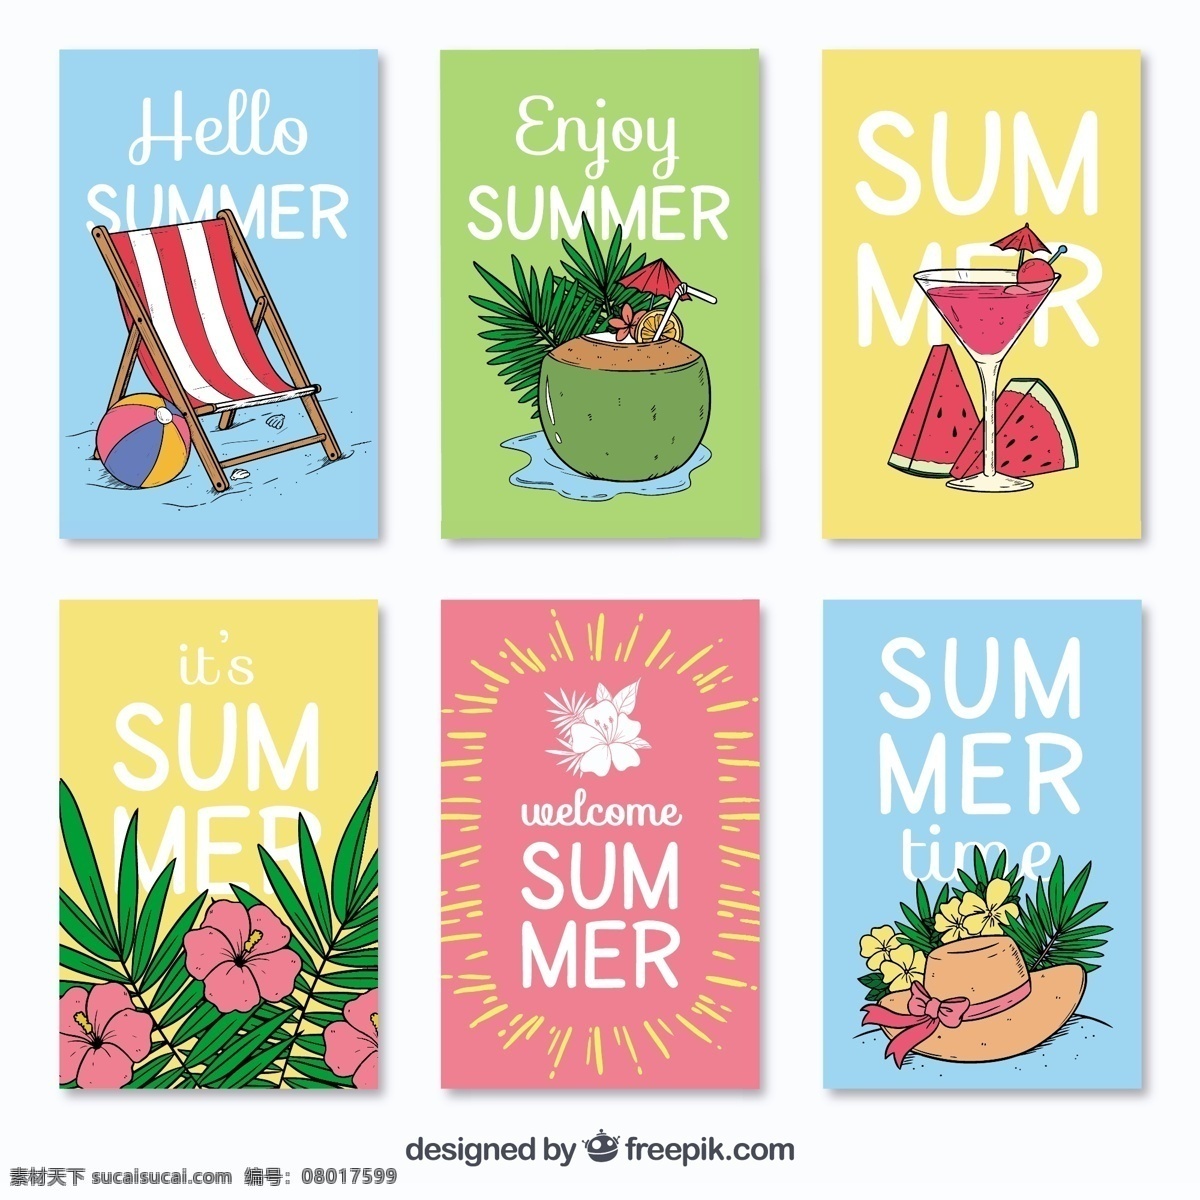 夏季 手绘 卡片 种类 花 一方面 夏天 模板 水果 颜色 饮料 假日 帽子 鸡尾酒 椅子 卡 装饰 度假 季节